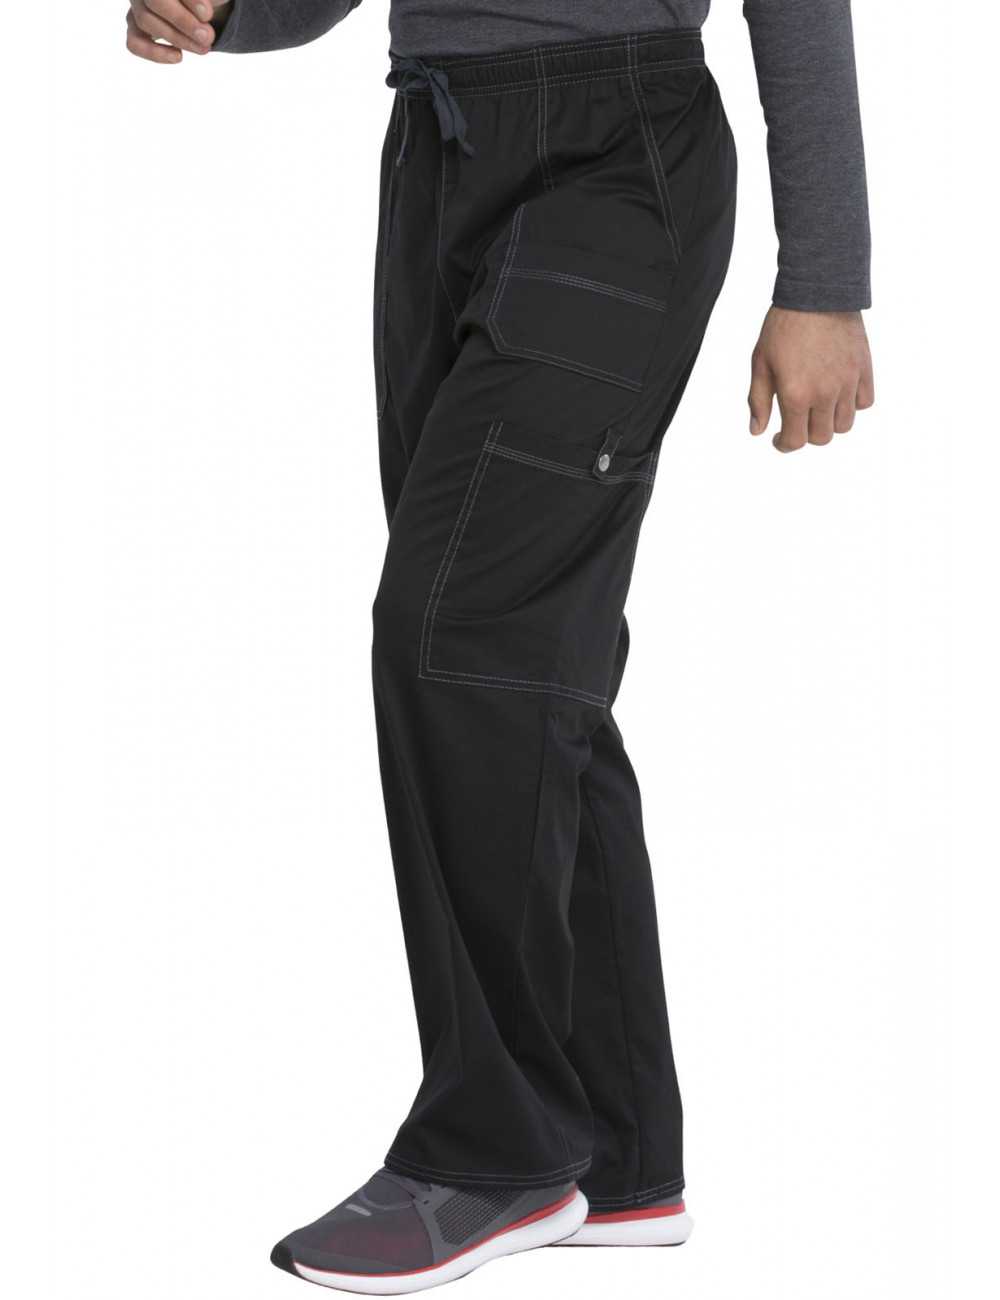 Pantalon flex universel homme - Polycoton - Dickies - Fauretex